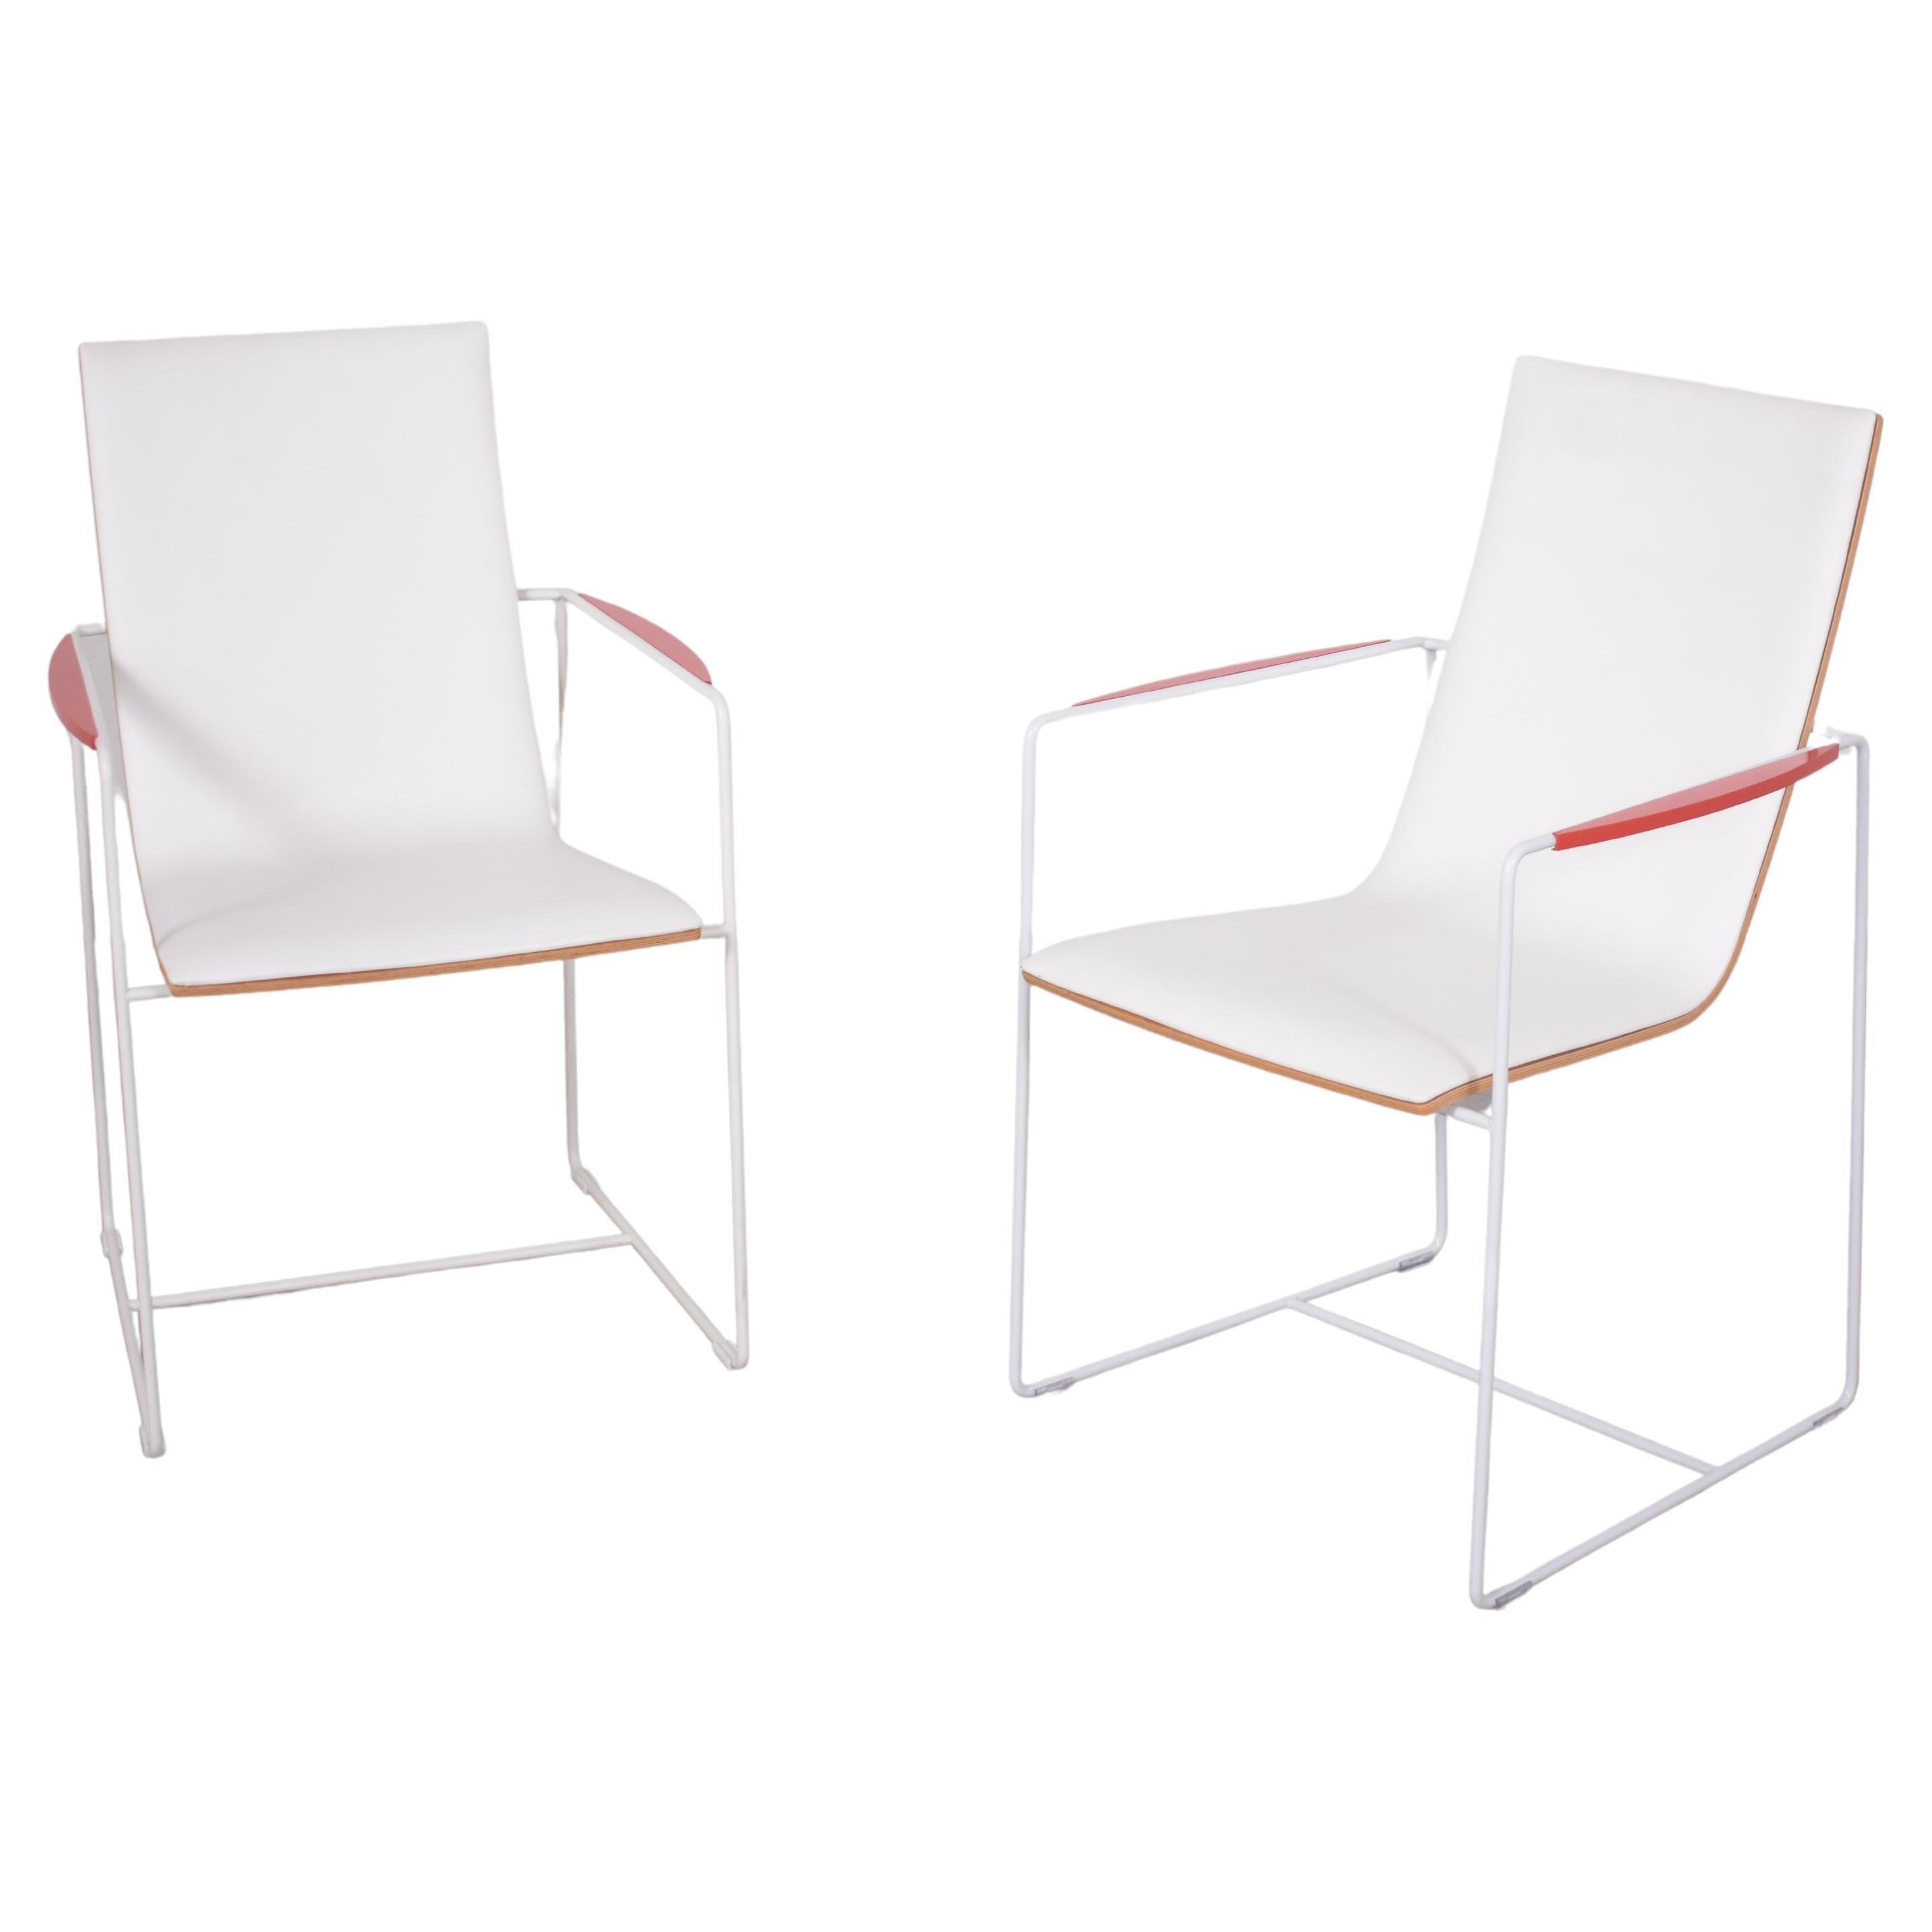 Élevez votre espace de vie ou de travail avec notre exceptionnelle paire de fauteuils modernistes, méticuleusement restaurés à l'état premier par notre équipe d'artisans professionnels. Ces chaises exceptionnelles sont dotées d'une structure en bois